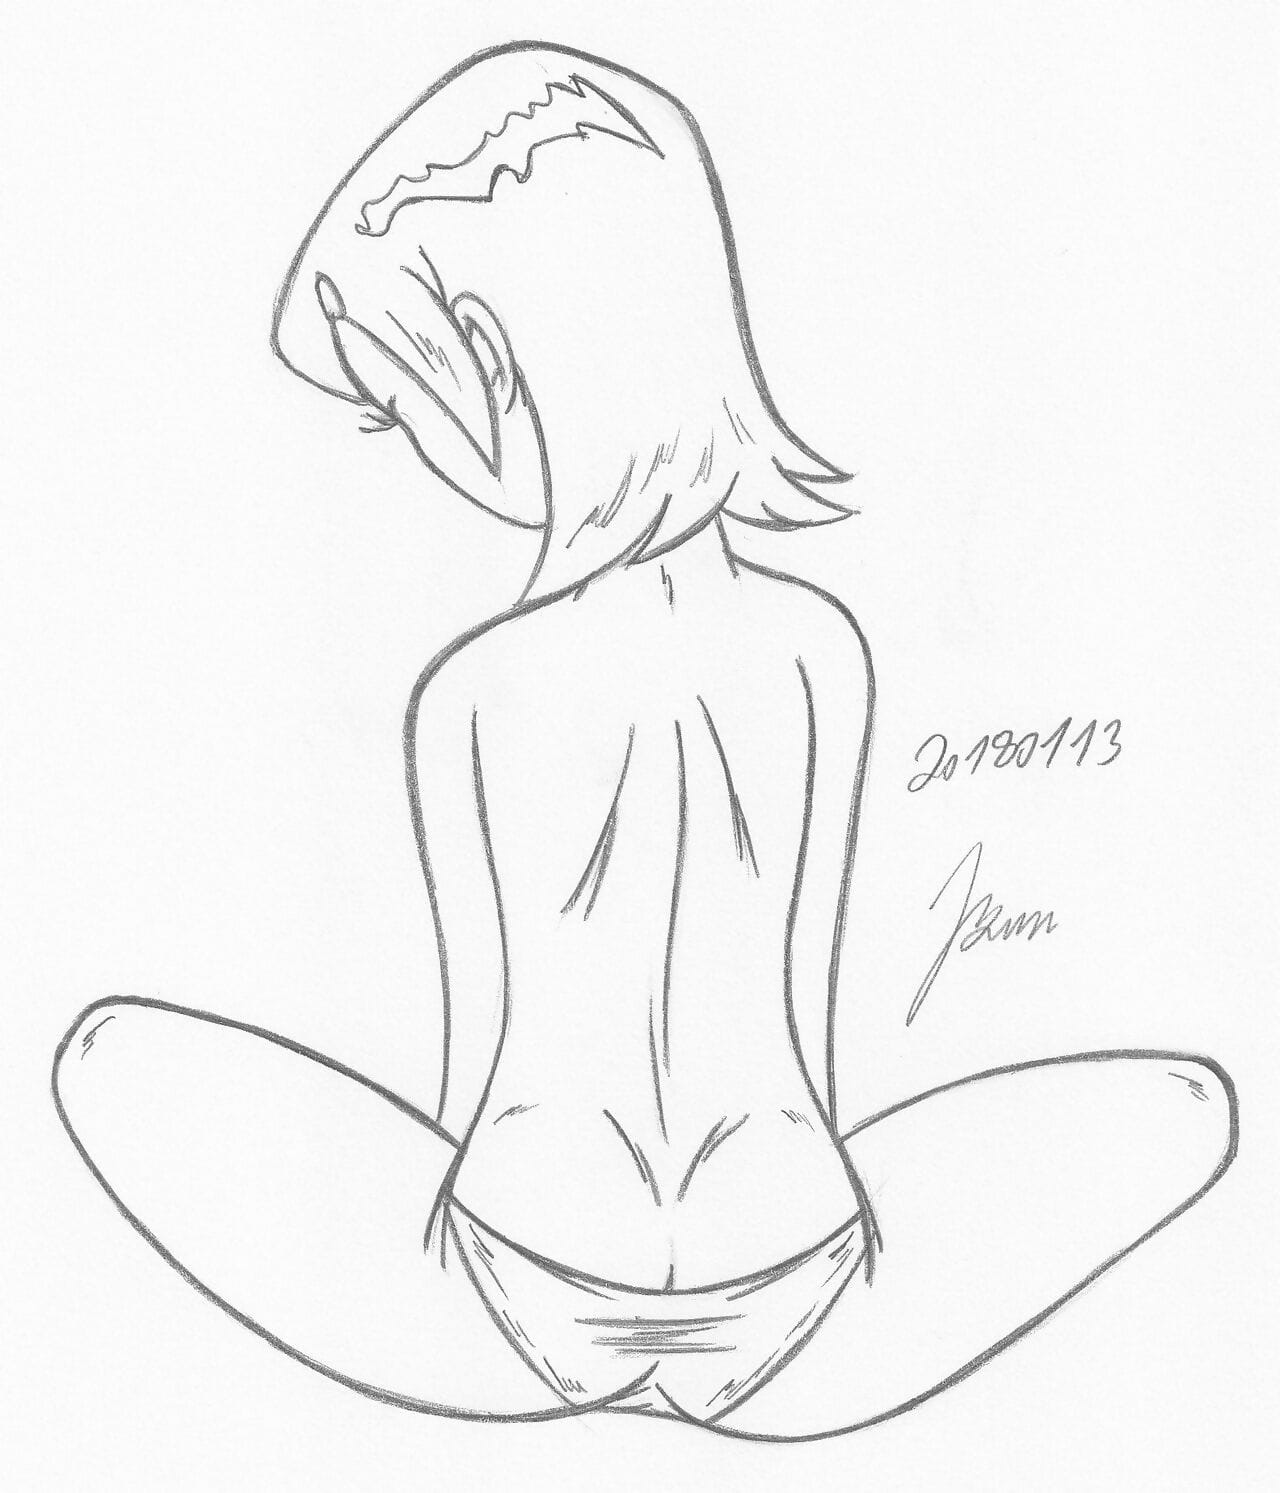 Gwen tennyson_ ben10_my miny bocetos work_5 page 1